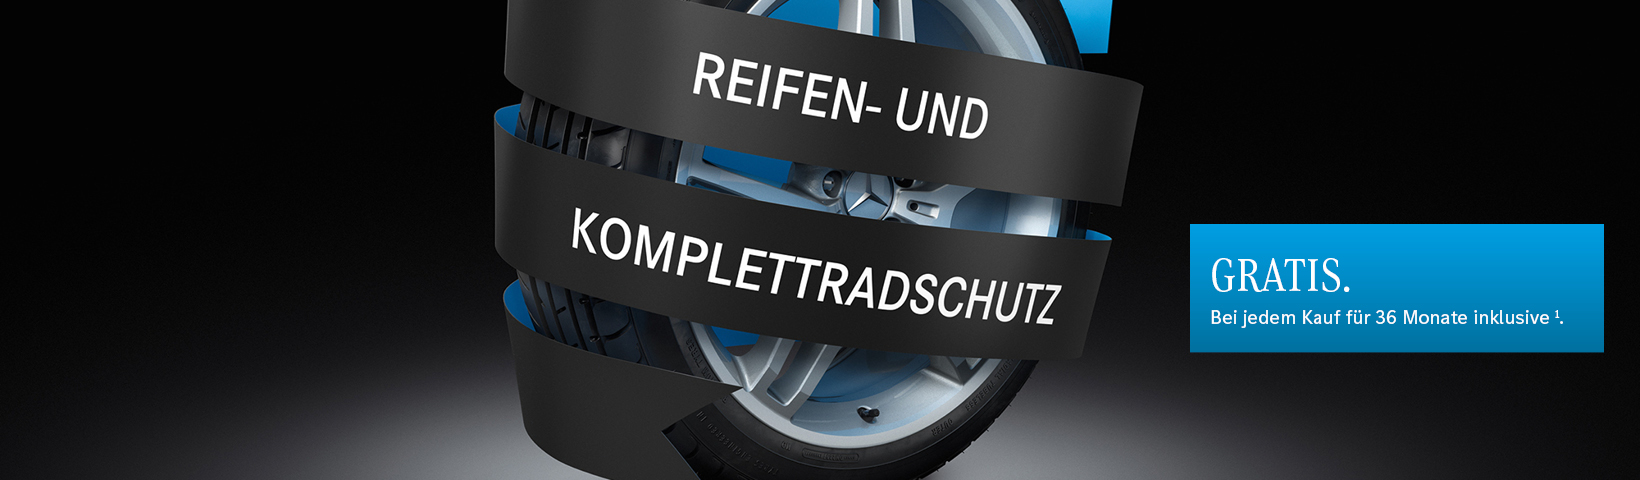  Header_Bild_Reifen-Komplettradschutz_Gratis_RGB_1640_x_480.jpg